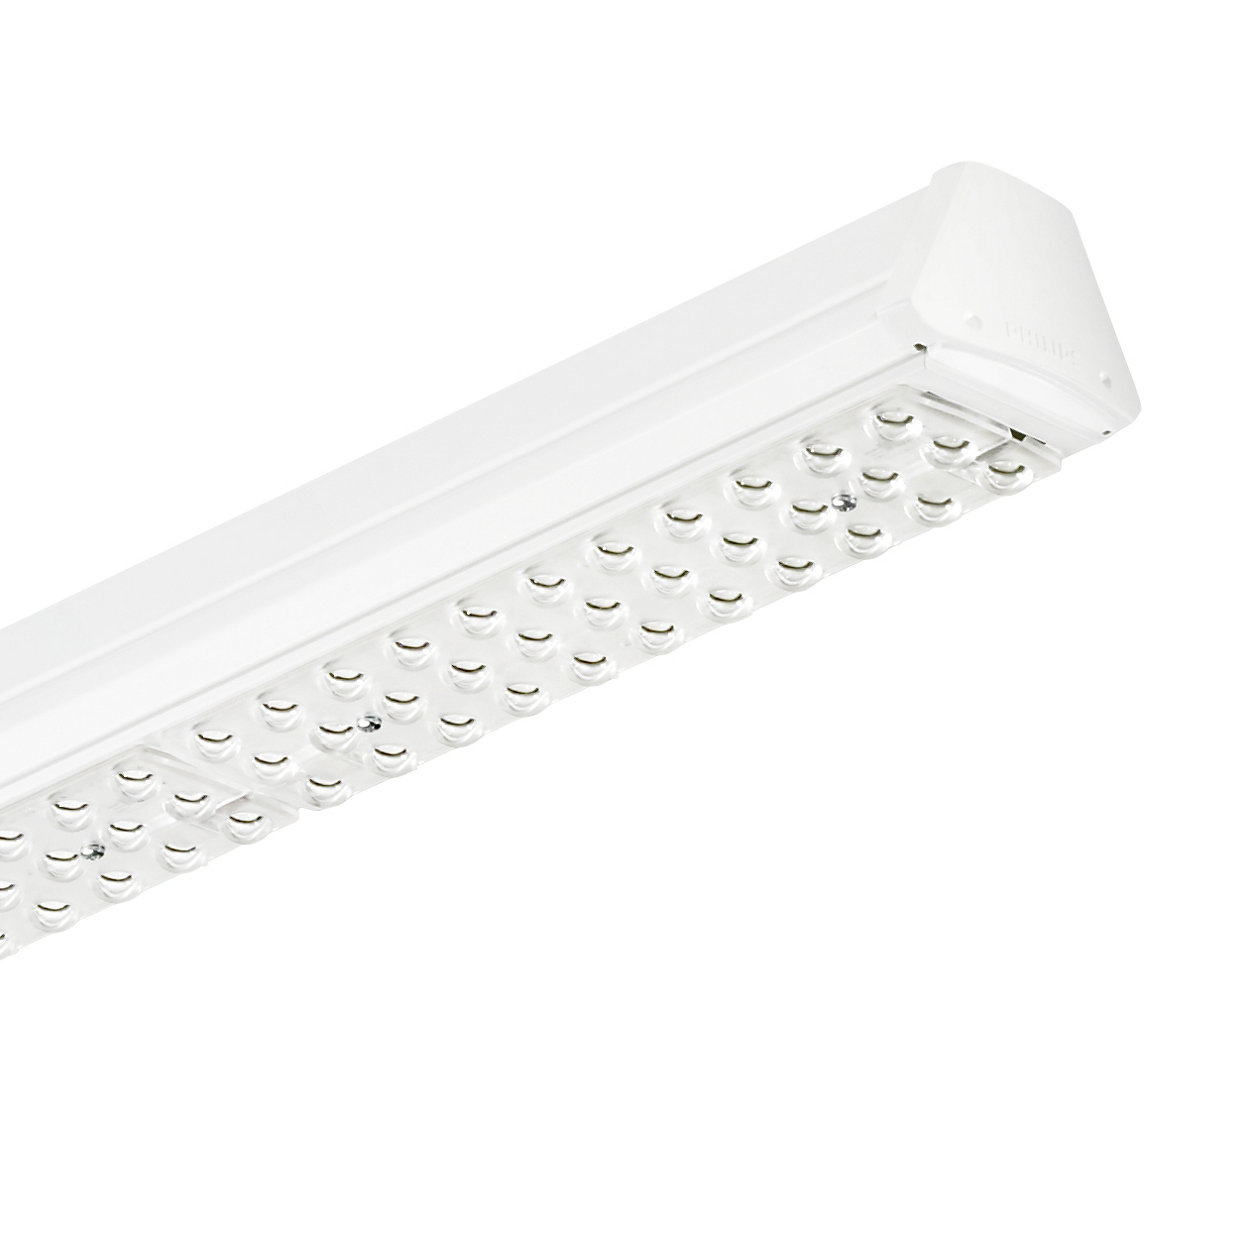 Maxos LED: solución innovadora y flexible que proporciona la potencia lumínica ideal